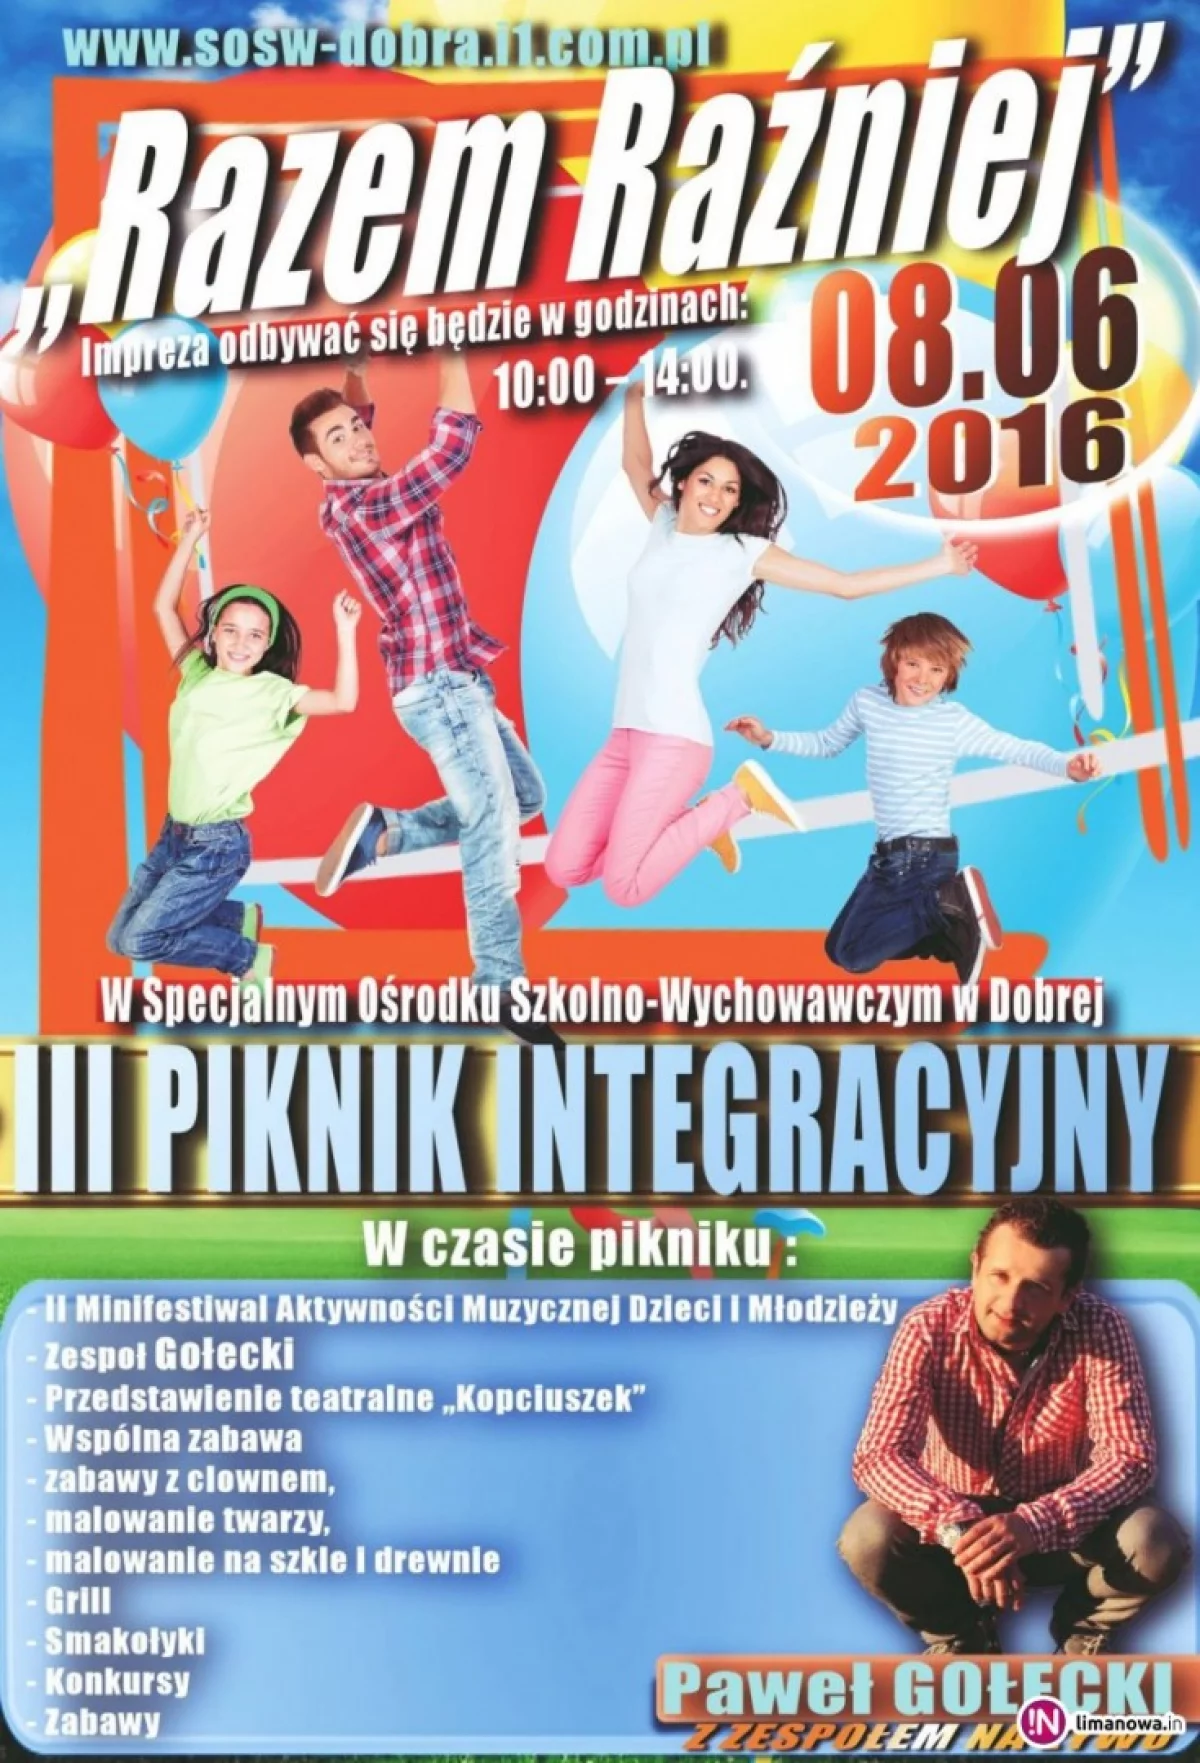 Konkursy, przedstawienia, zabawy i festiwal - jutro Piknik Integracyjny